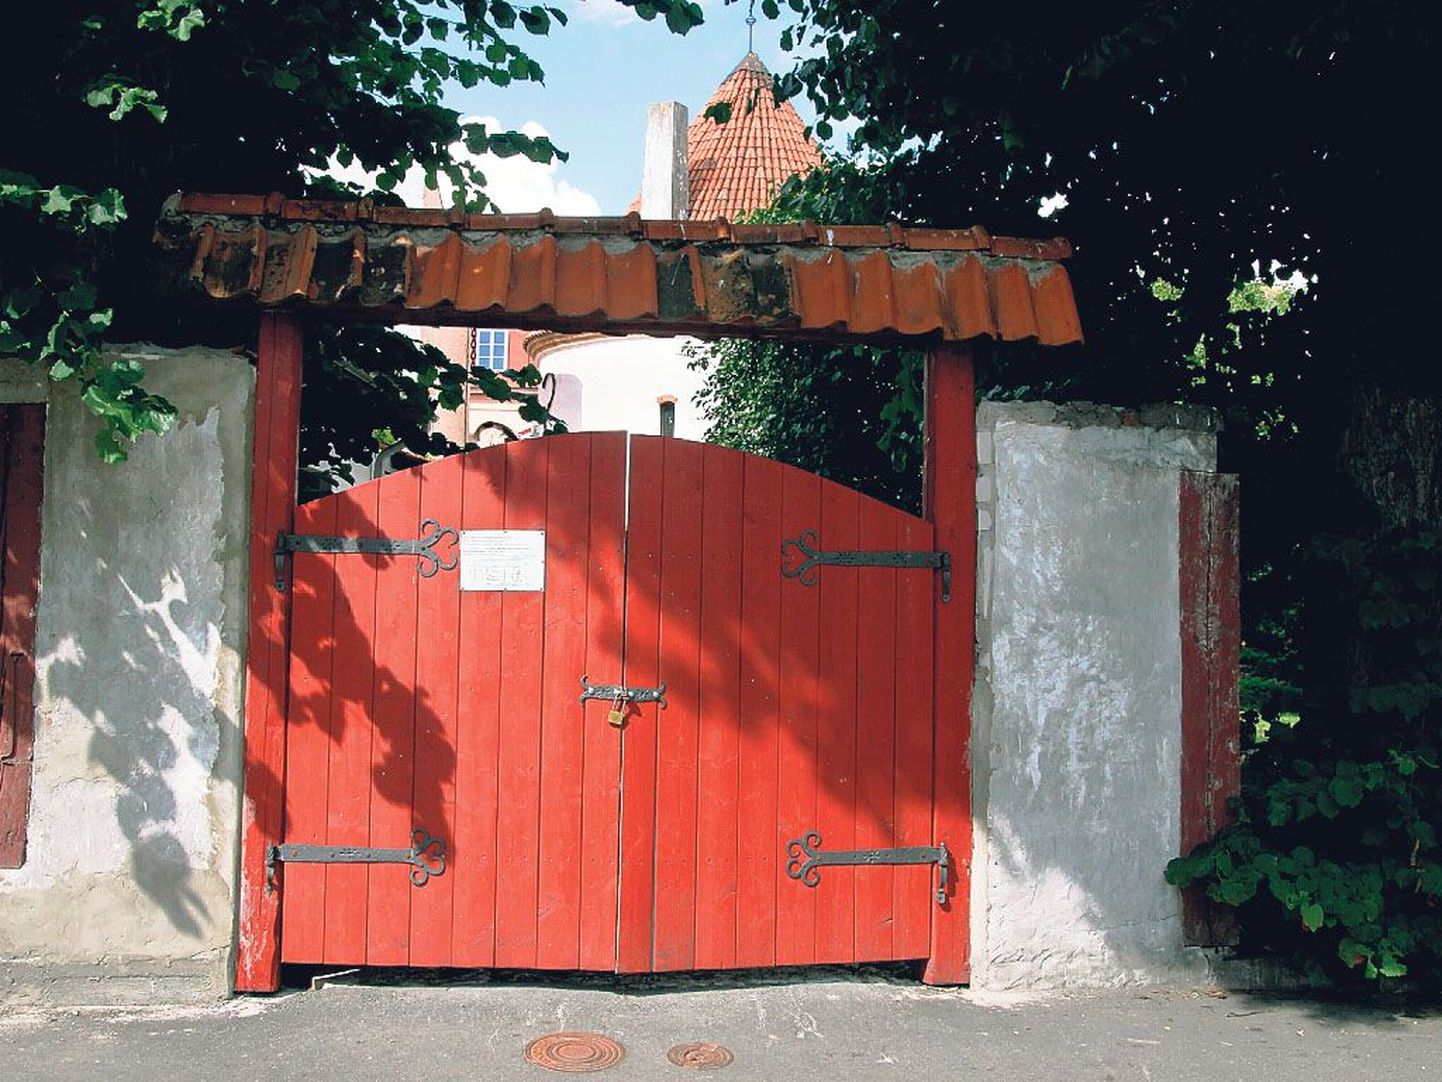 Punane torn on reisiteatmikes enim reklaamitud vaatamisväärsus Pärnus, kuid sel suvel on Pärnu vanim ehitis nii omadele kui võõrastele suletud.